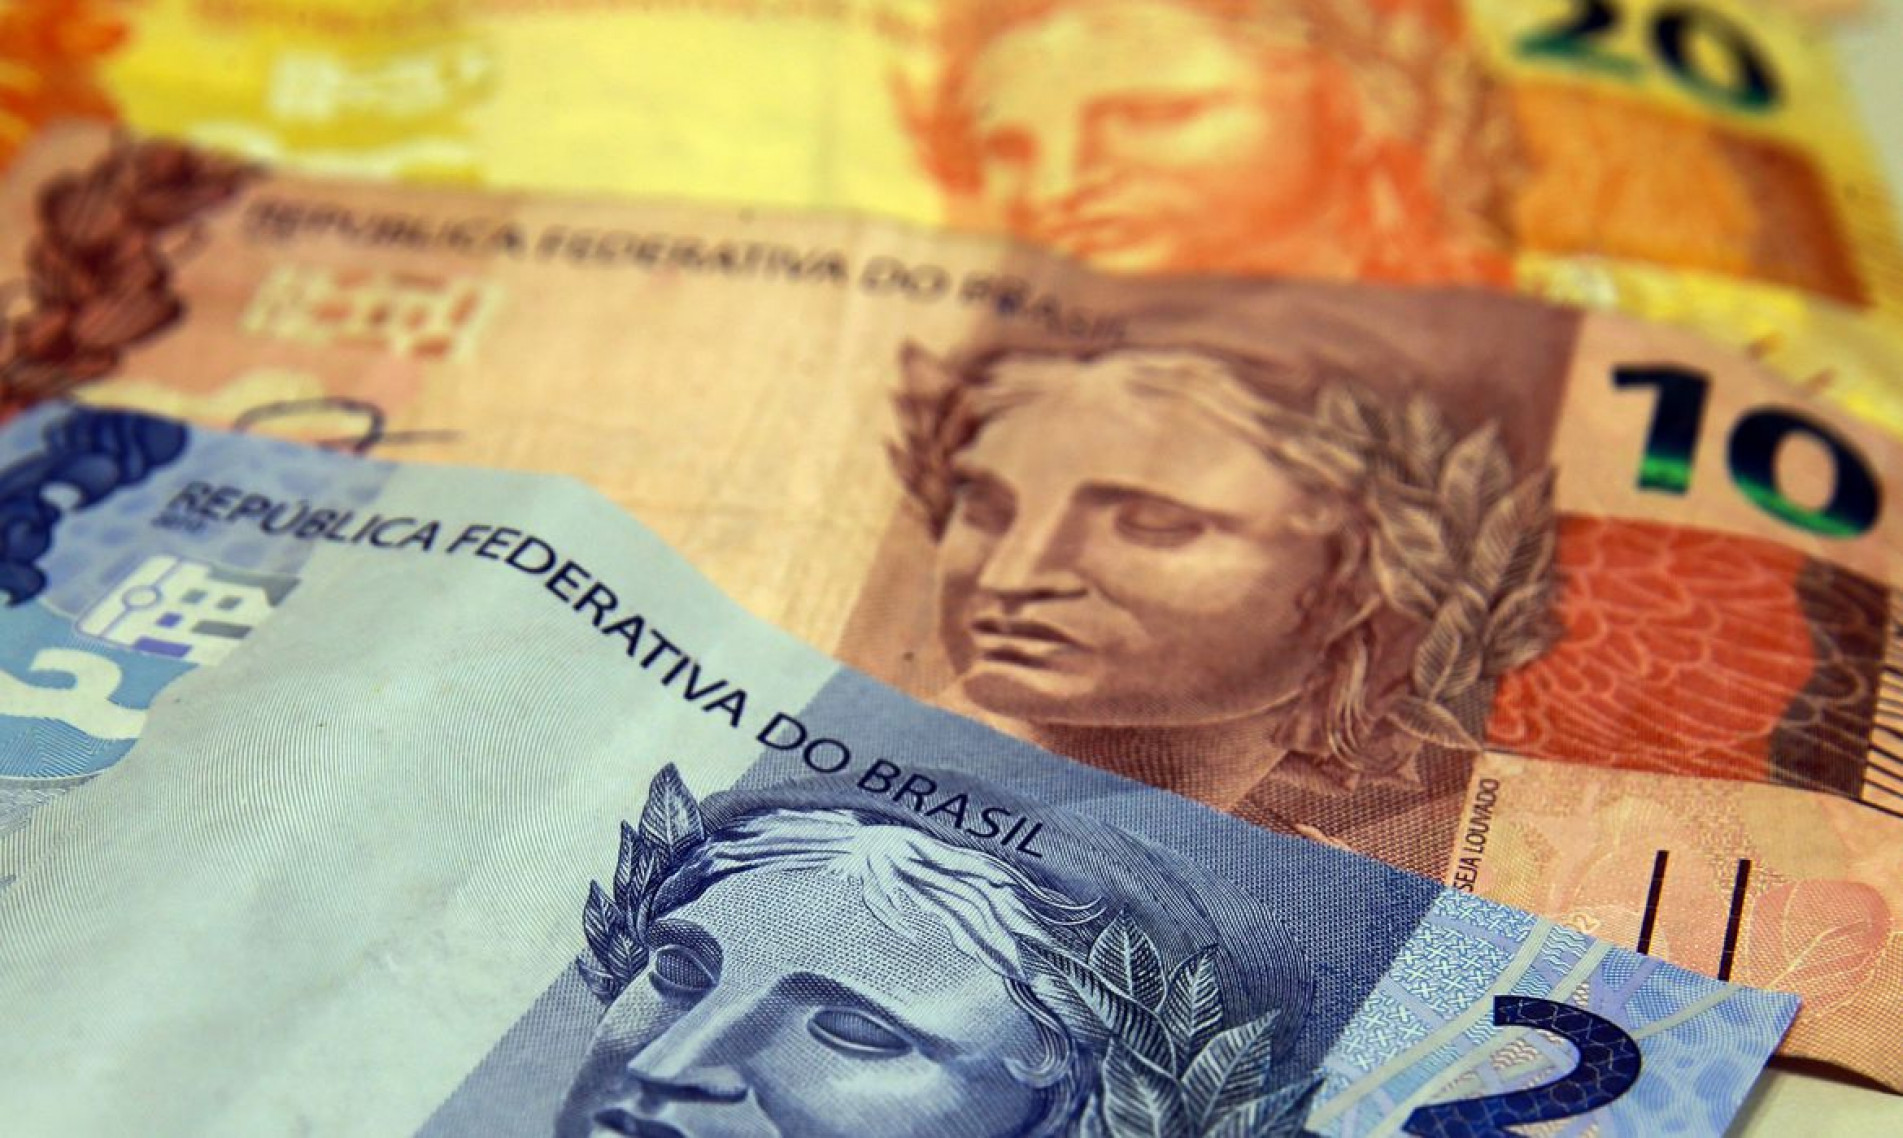 Auxílio Brasil de R$ 600 começa a ser pago em agosto